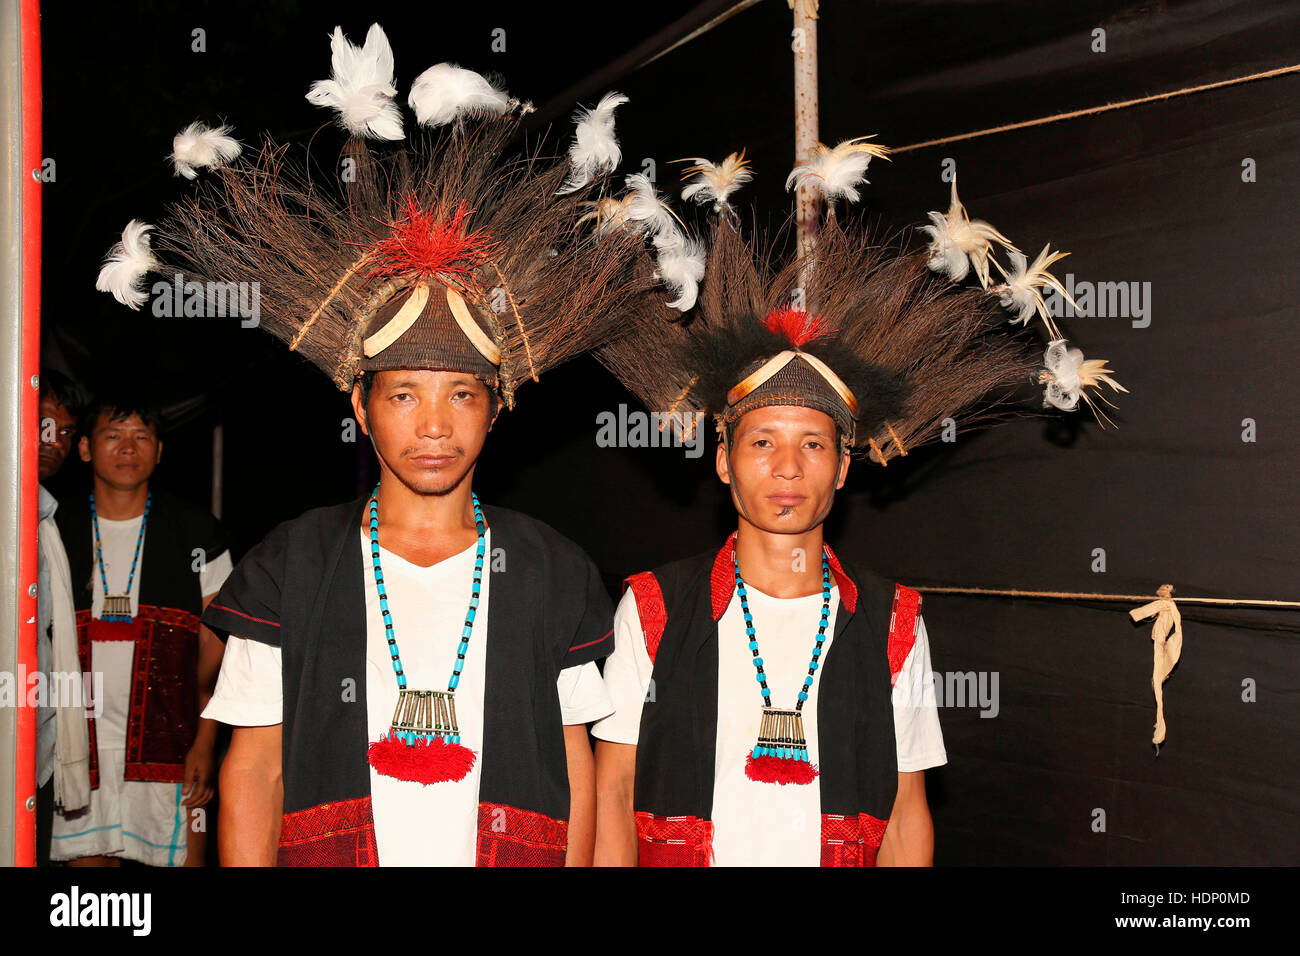 ADI Tribal Männer mit traditionellen Kopfbedeckungen von Arunachal Pradesh, Indien. Tribal-Festival in Ajmer, Rajasthan, Indien Stockfoto